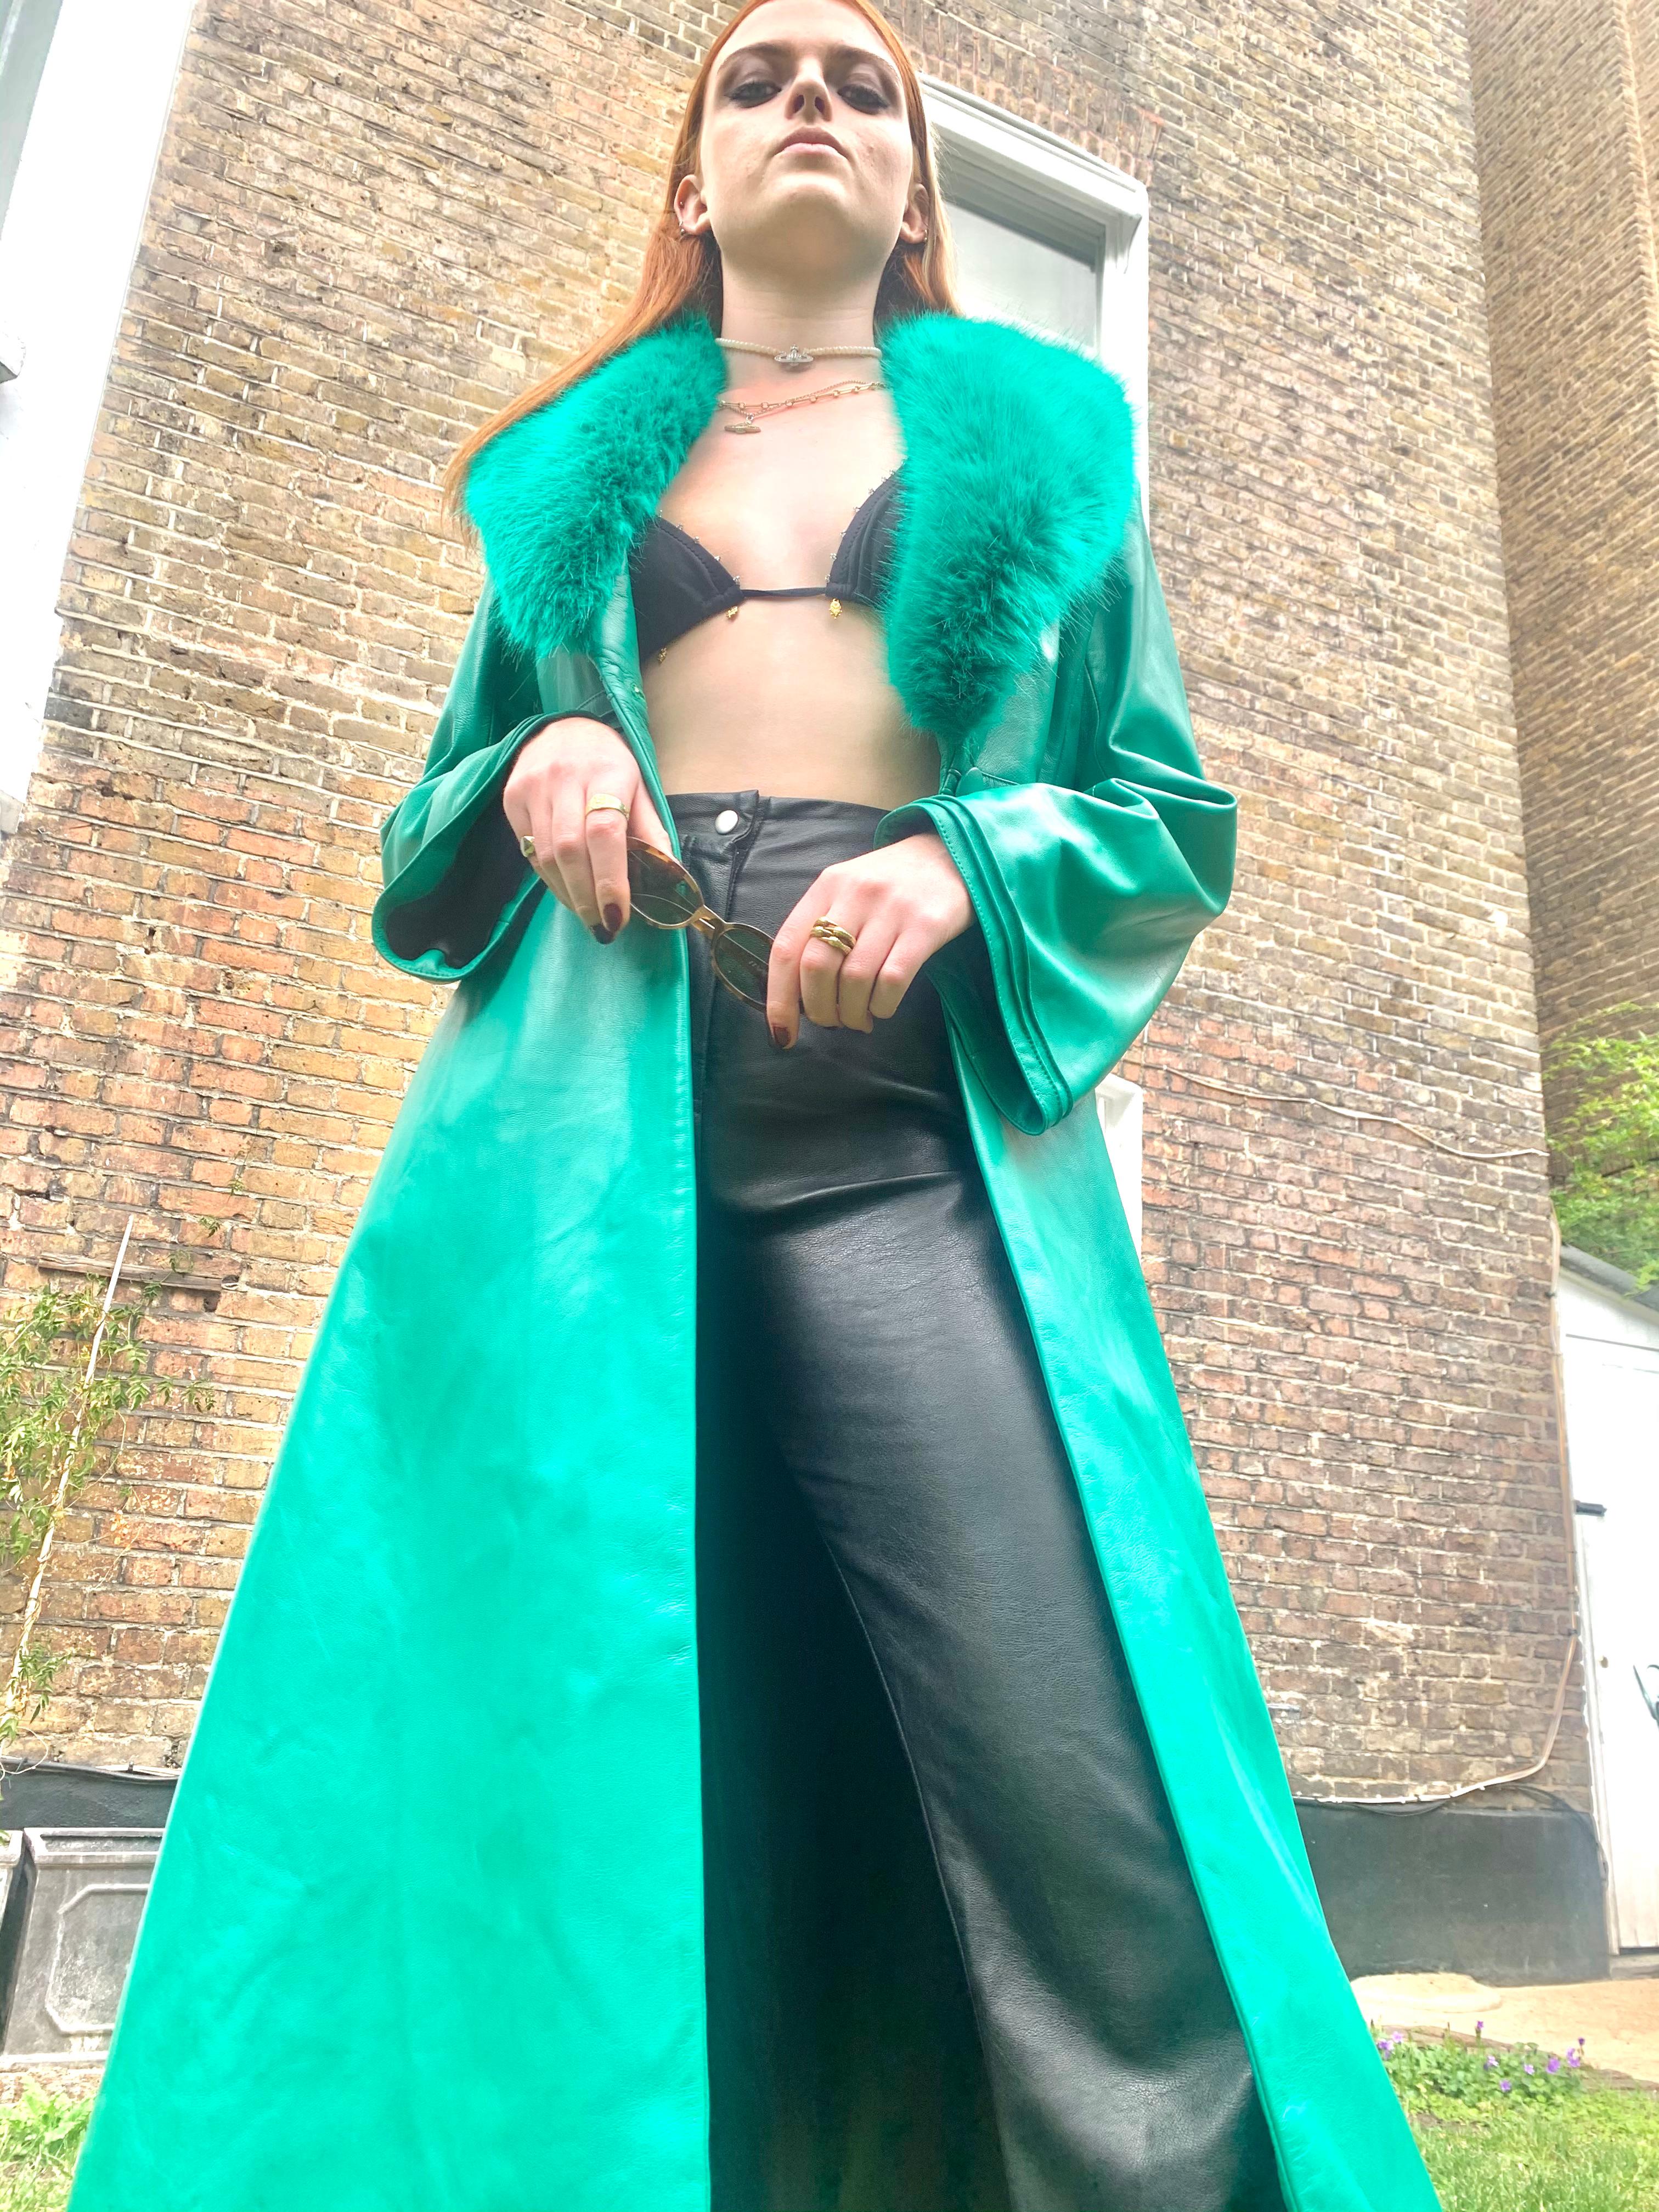 Women's Verheyen London Edward Leather Coat in Green & Green Faux Fur - Size 10  UK 